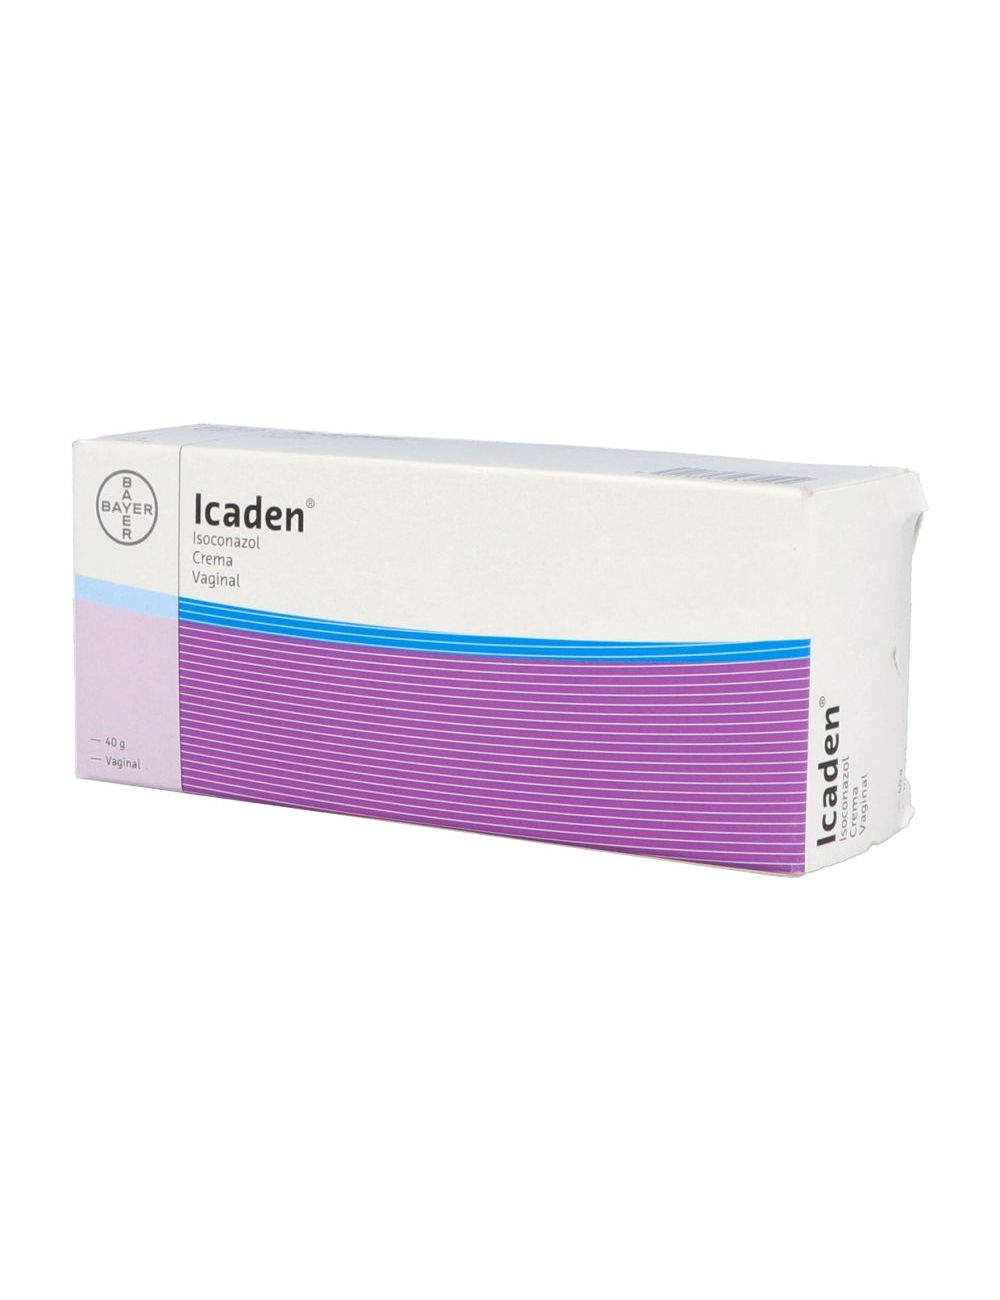 Precio Icaden crema vaginal tubo con 40 g | Farmalisto MX